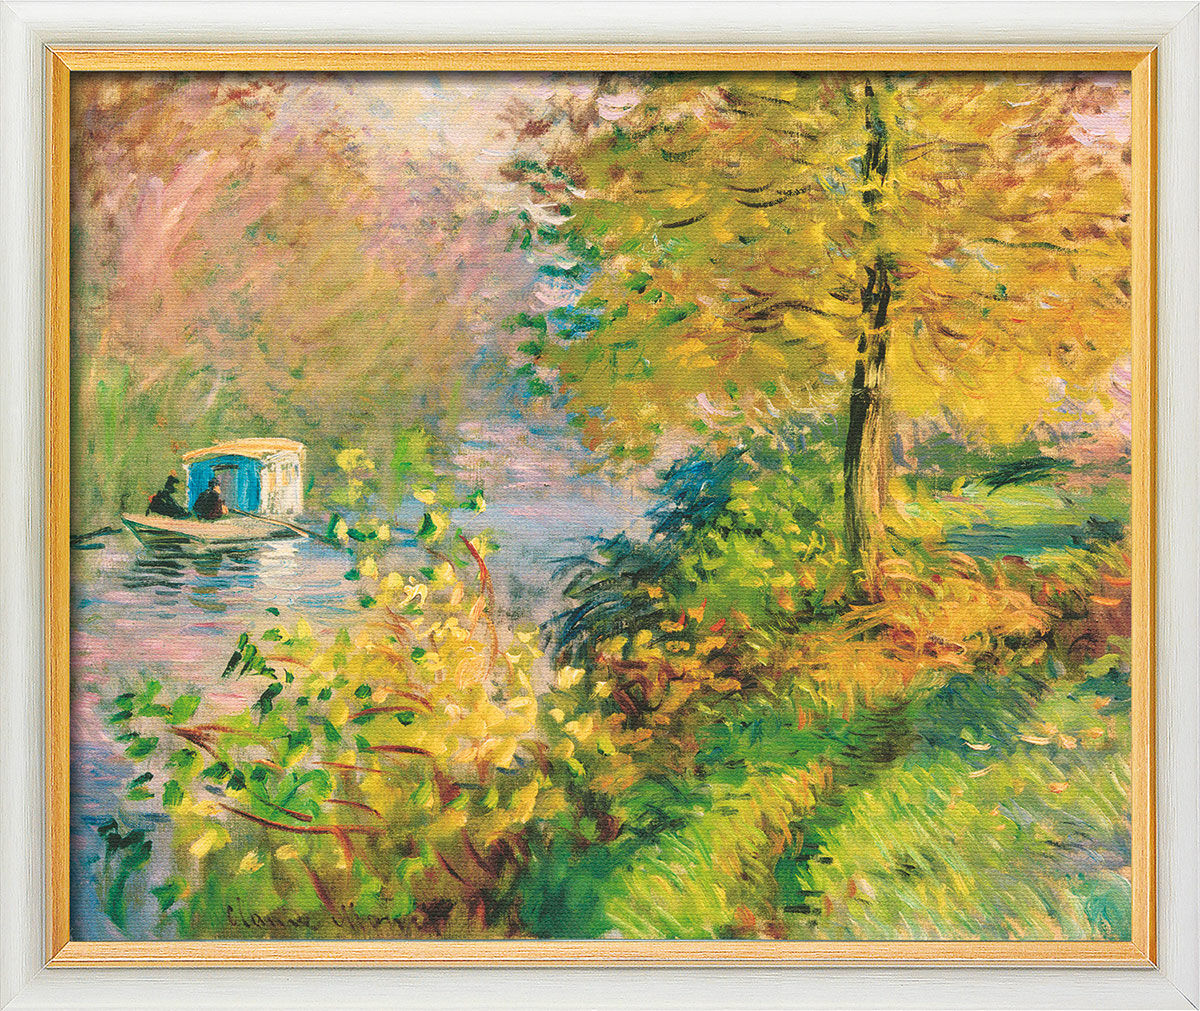 Tableau "Le bateau-atelier" (1876), encadré von Claude Monet